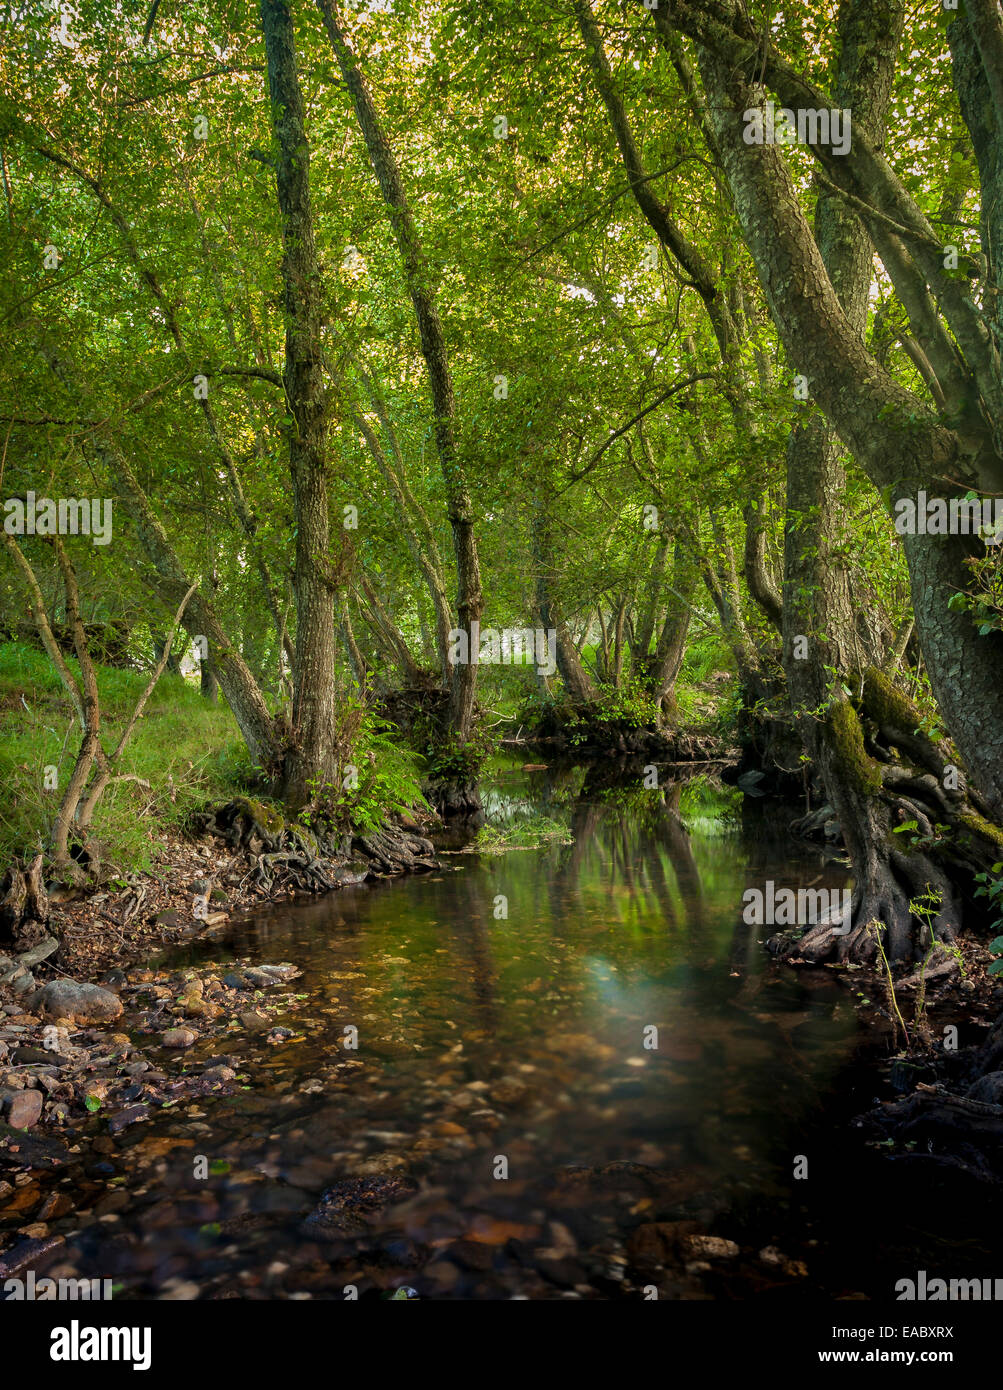 river villarino, zamora, spain Stock Photo